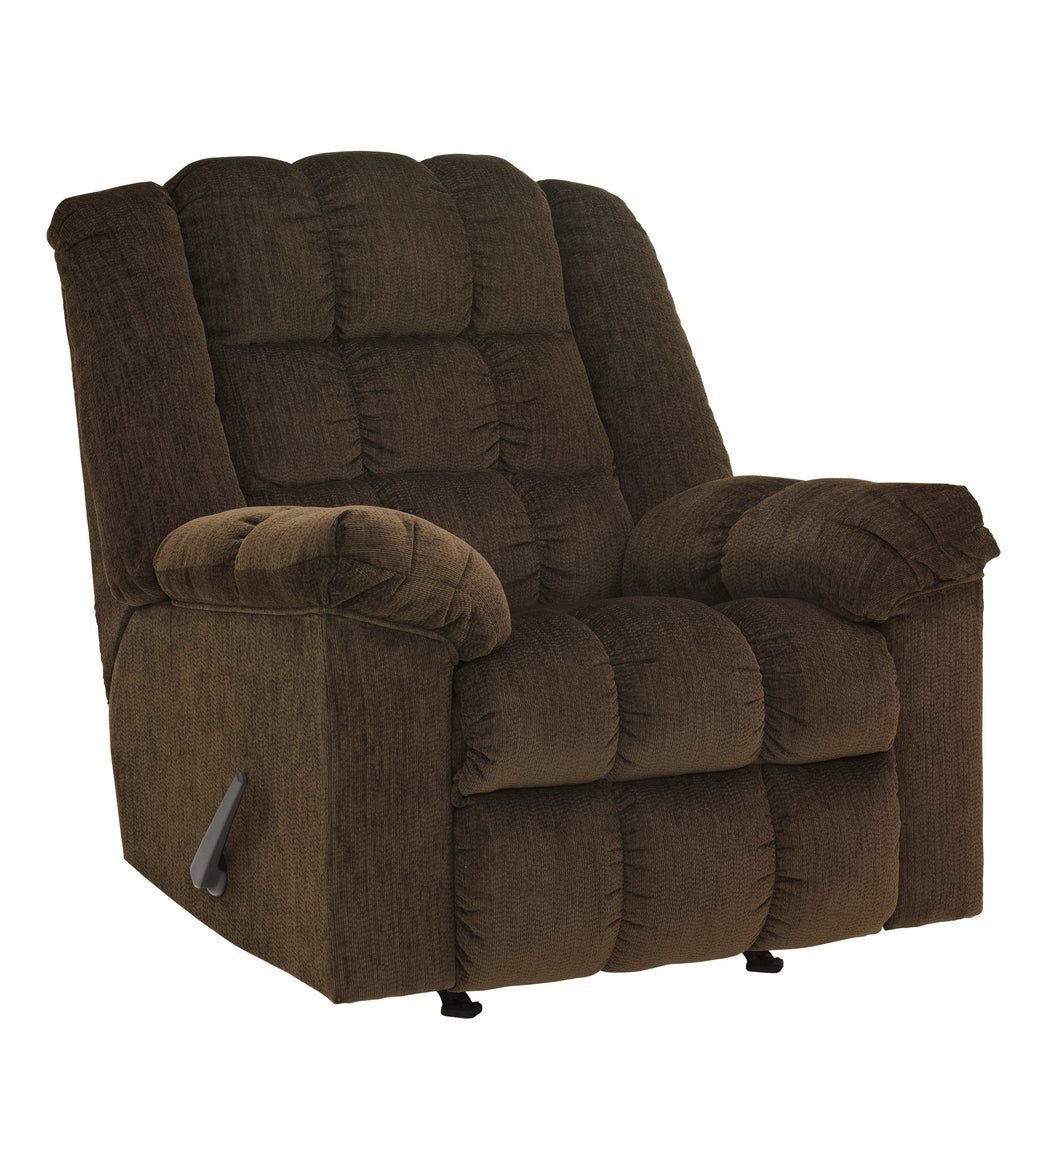 Ludden Rocker Recliner Chair - Cocoa - Furniture Depot (6218590322861)